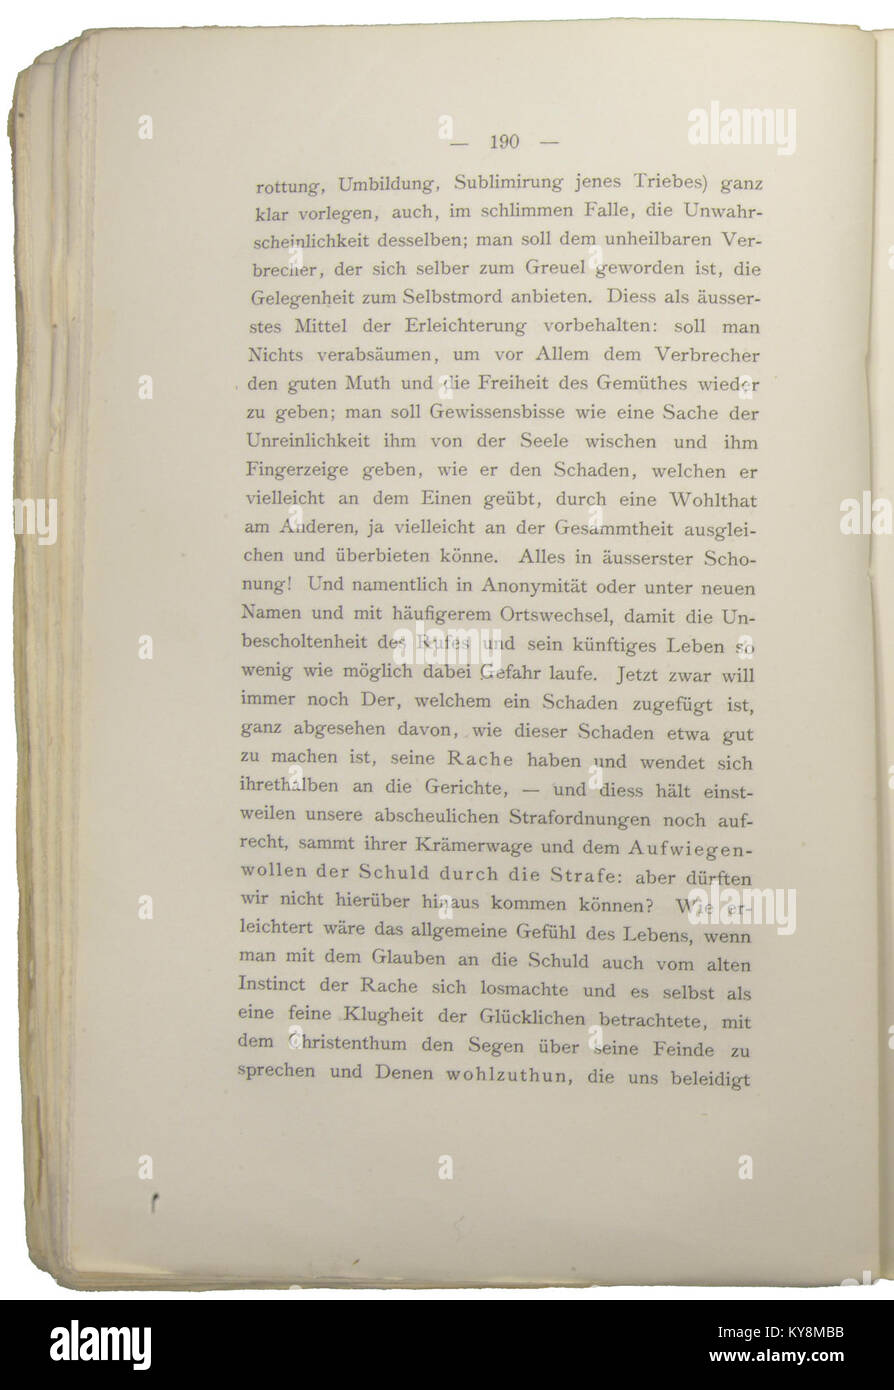 Nietzsche - Morgenröthe, 1881, p. 190 Stock Photo